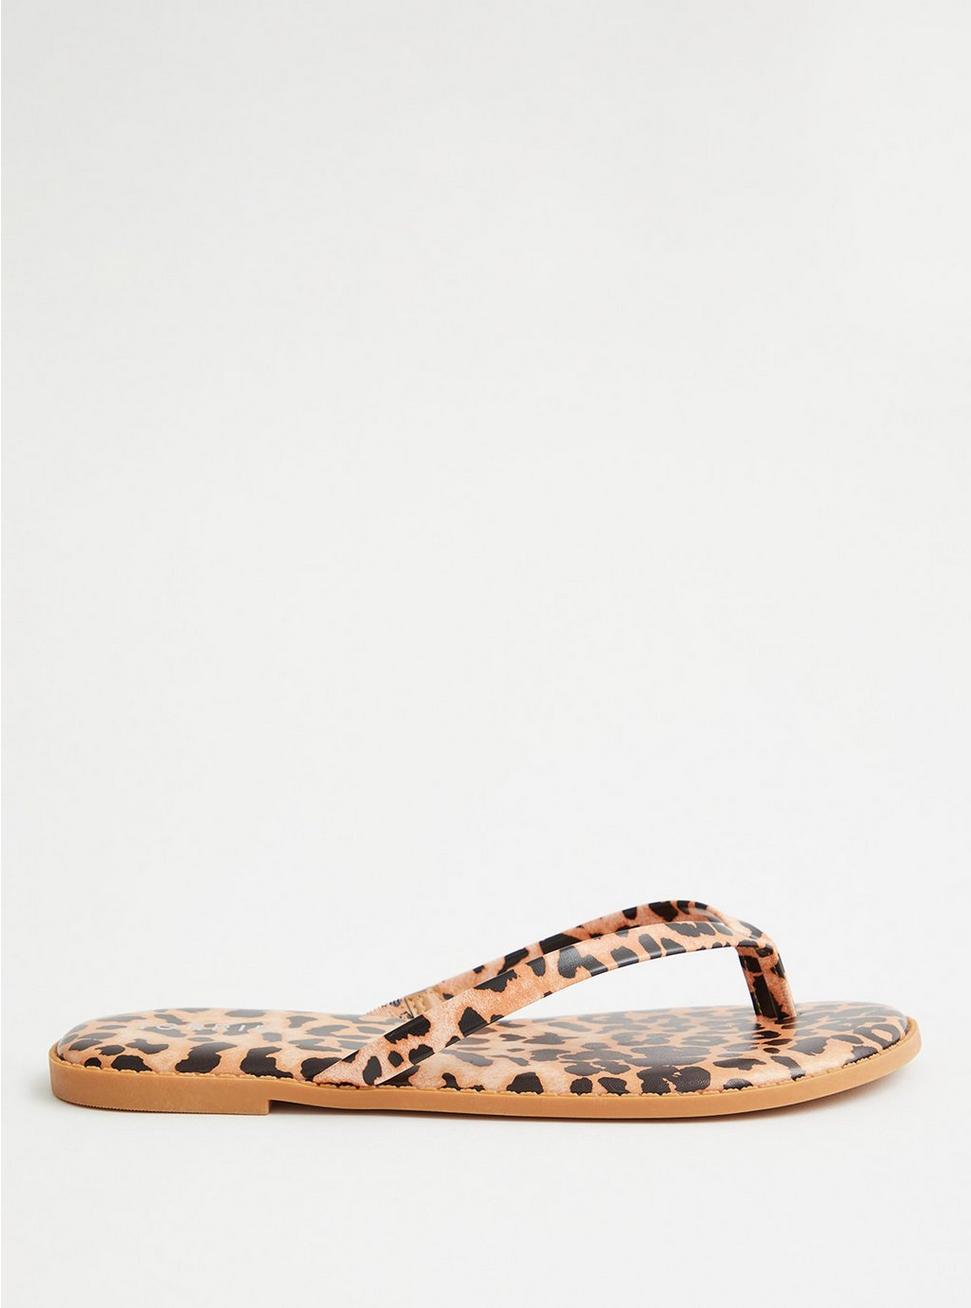 Plus Size - Leopard Faux Leather Flip Flop - Torrid